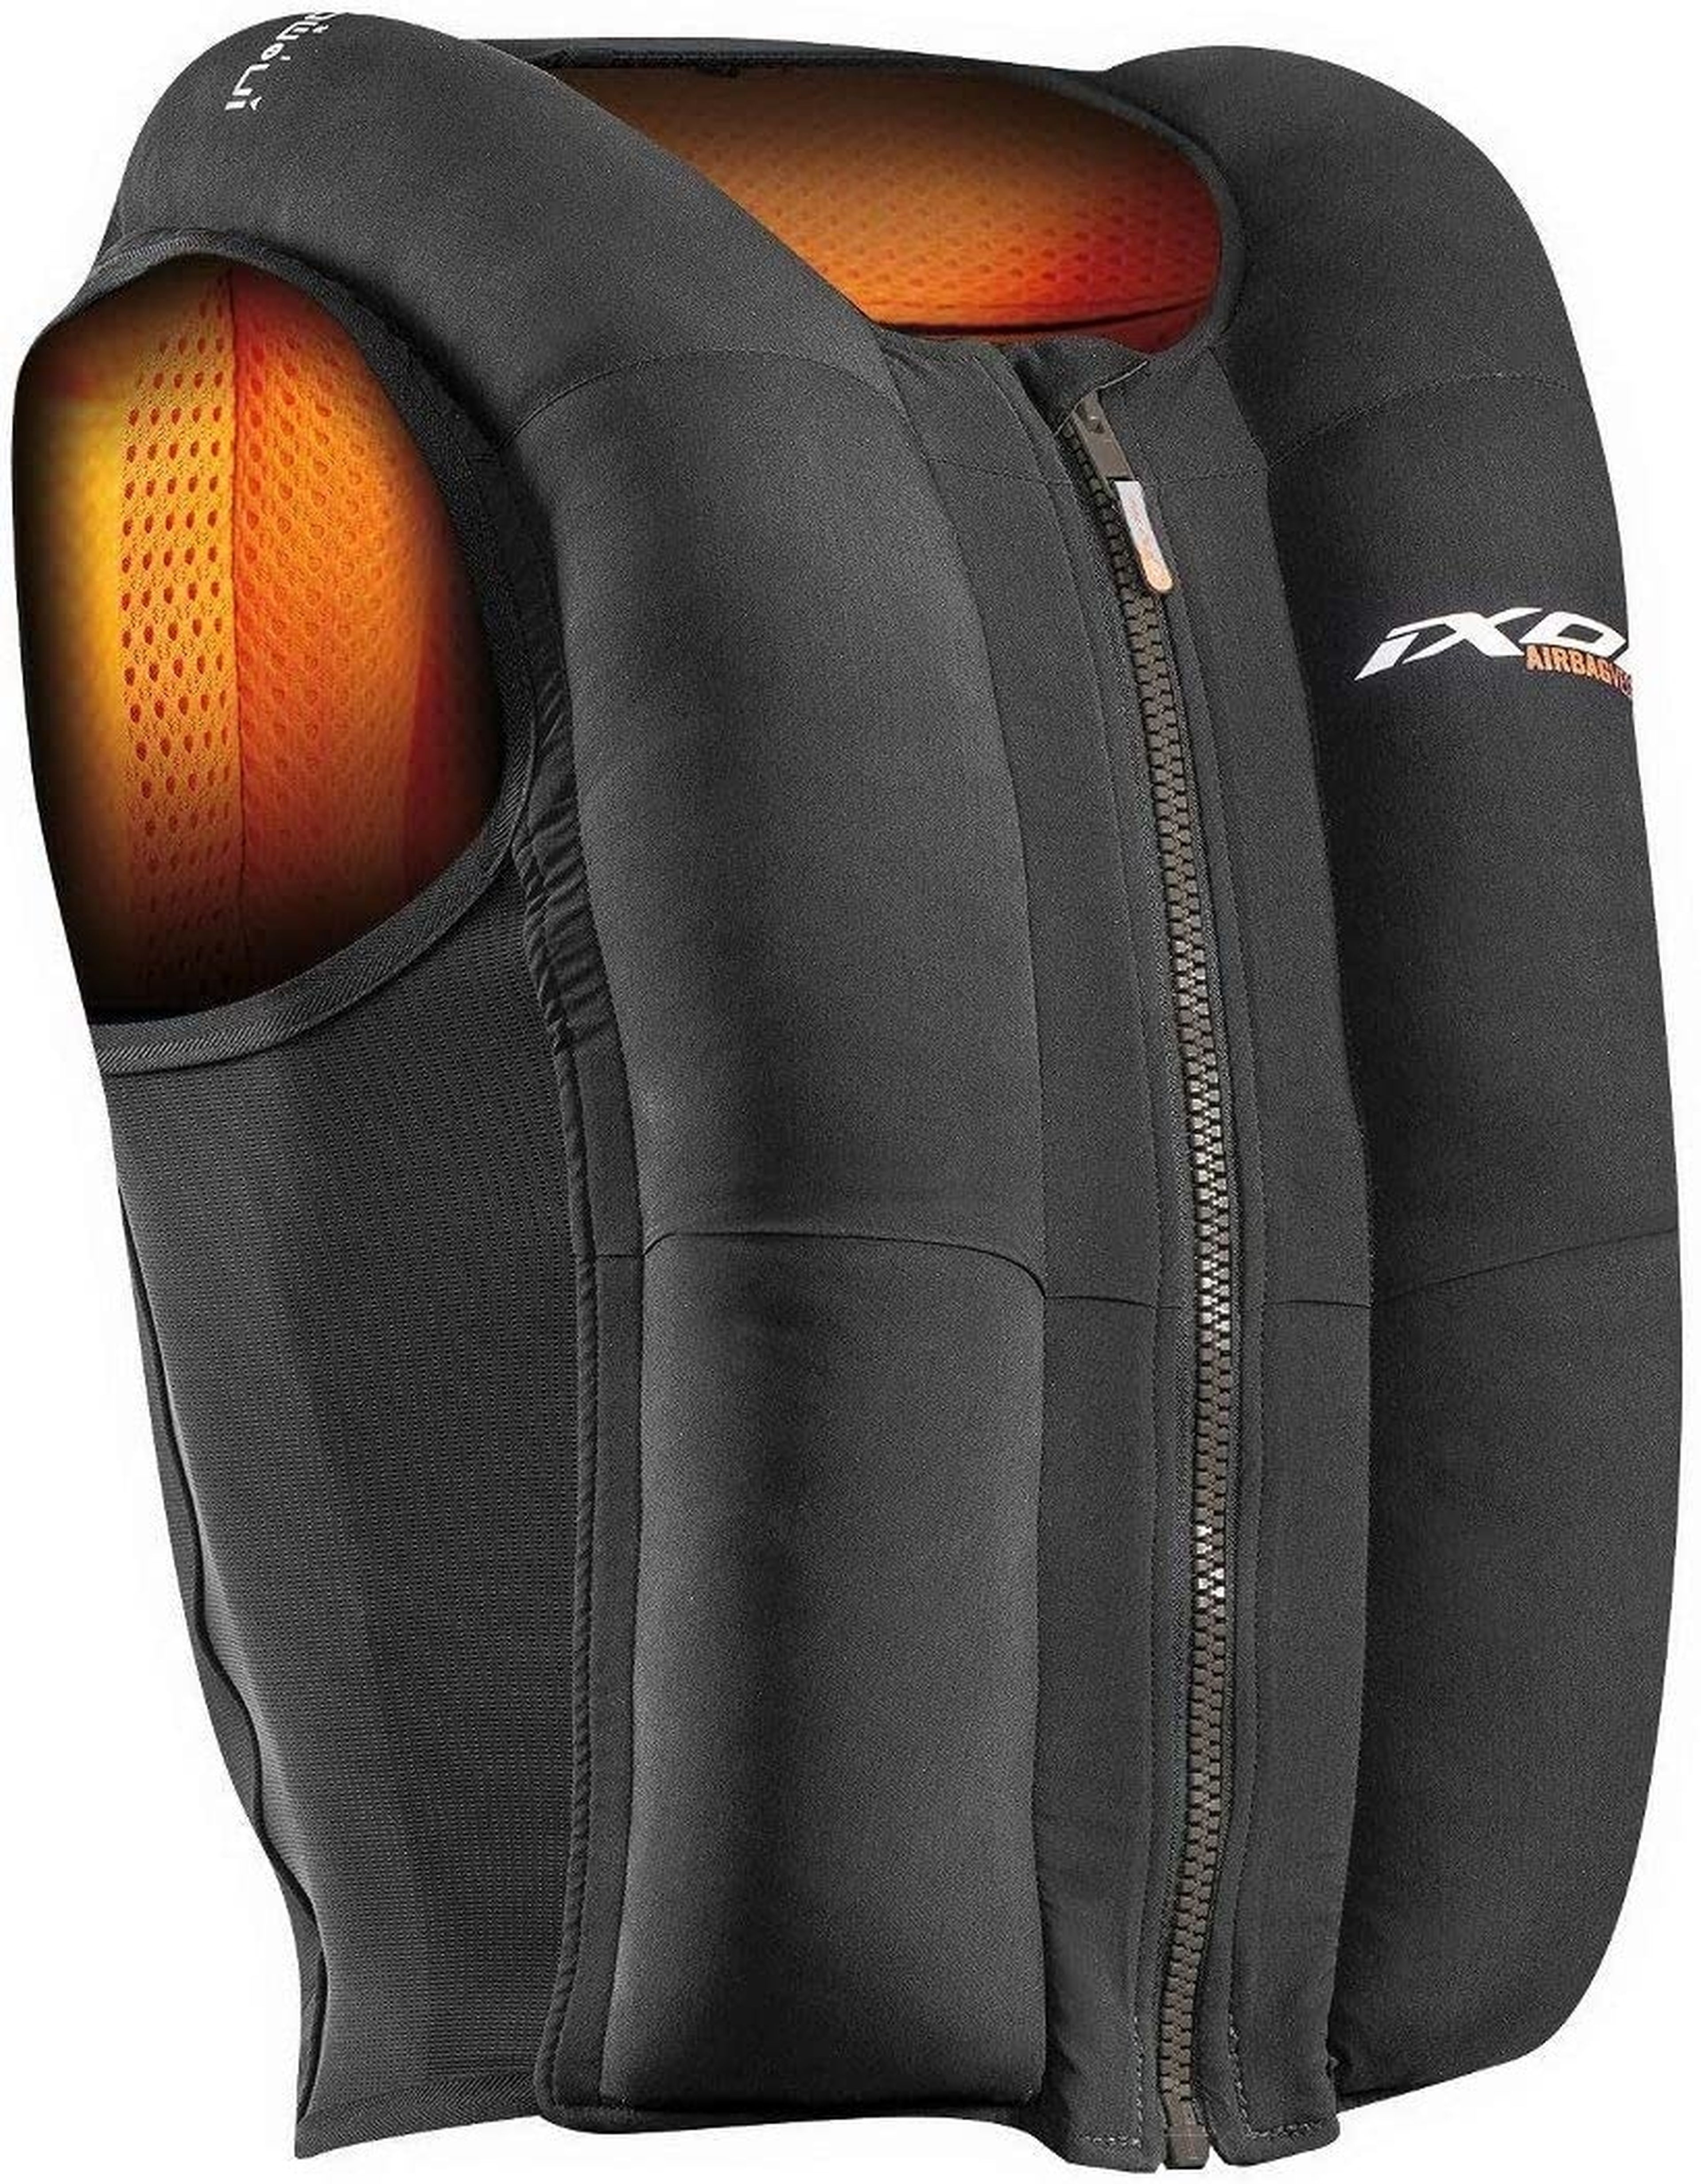 Este chaleco con airbag para moto es un chollo: barato, fabricado